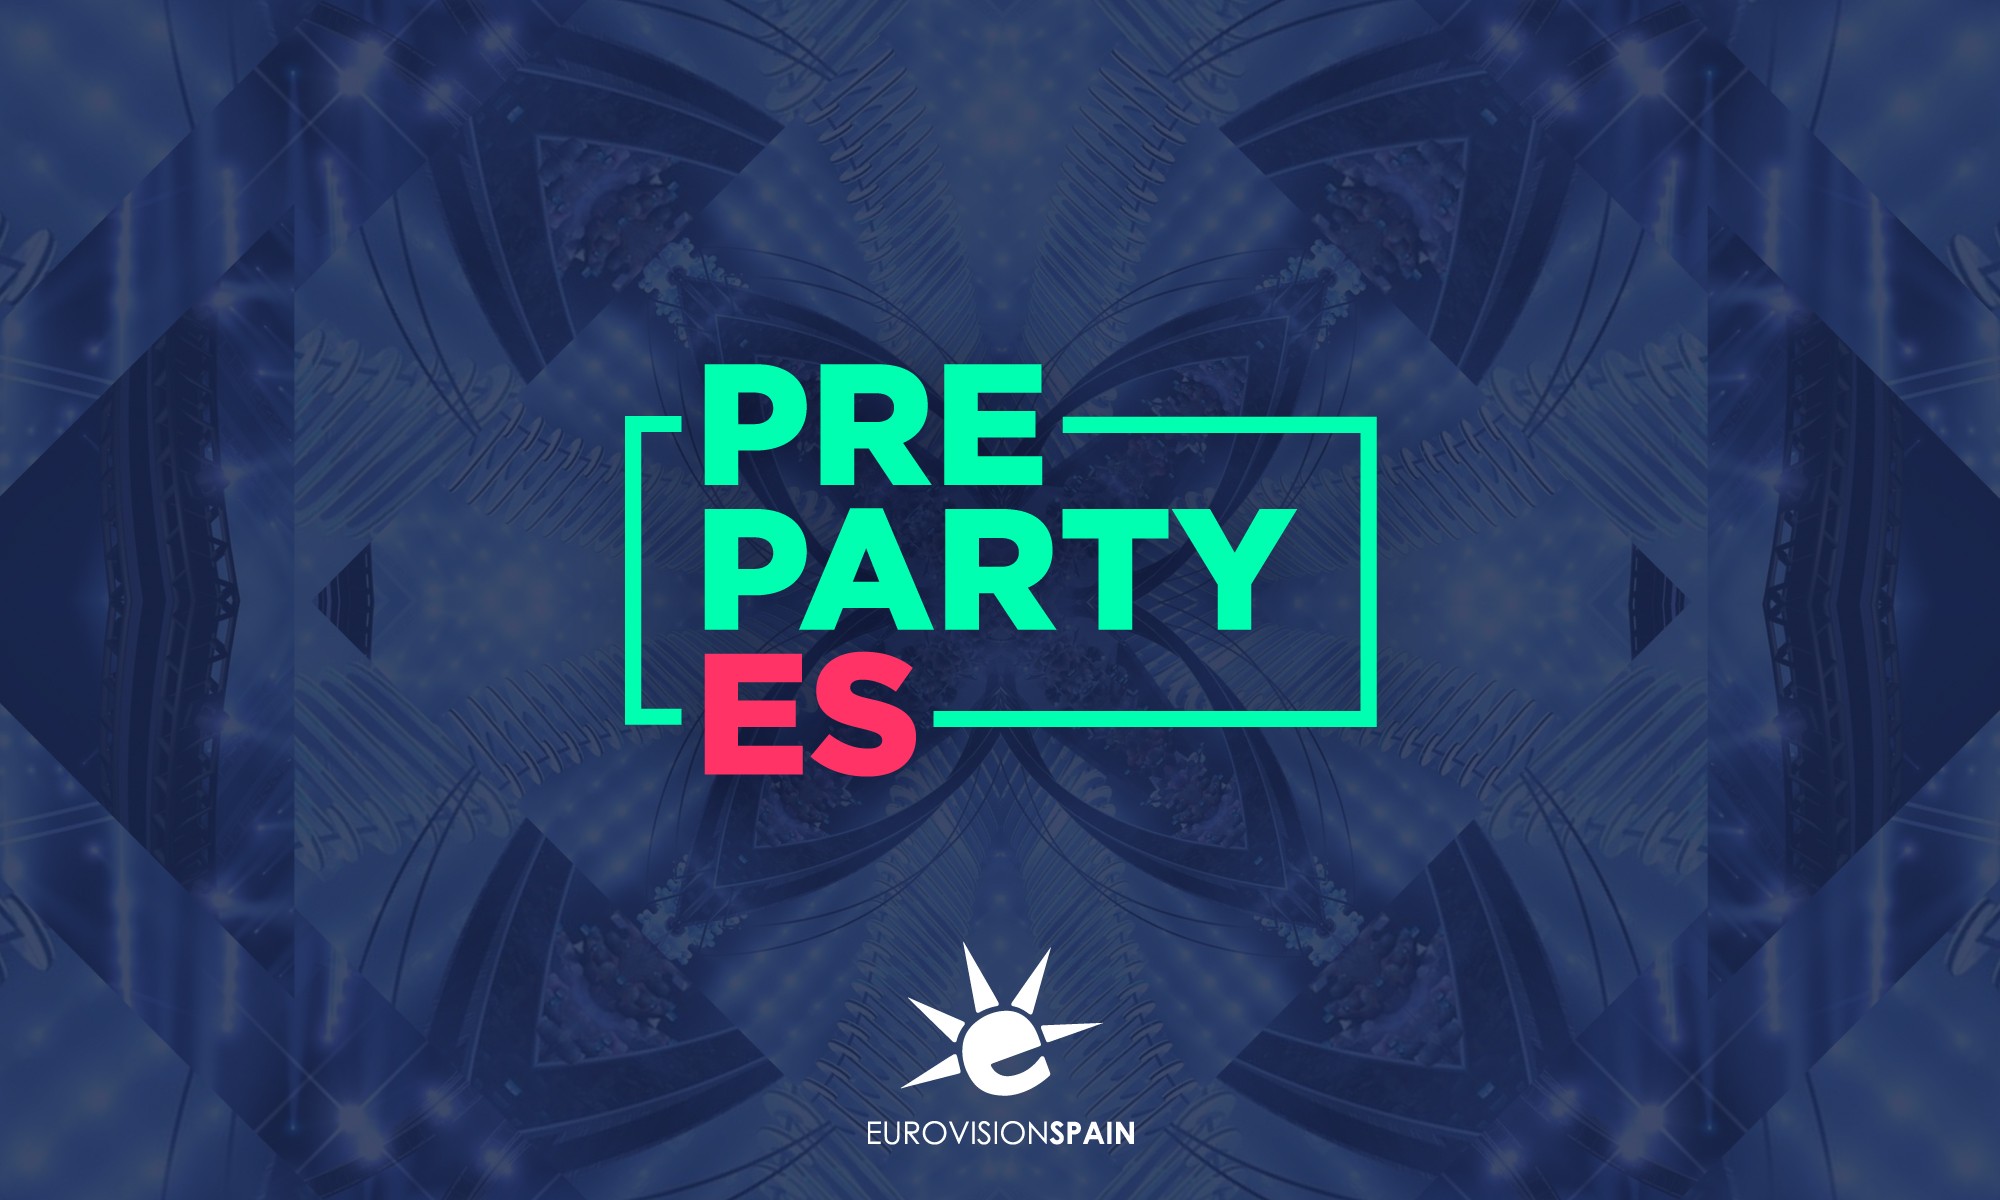 Eurovision-Spain celebrará la PrePartyES 2020 el 10 y 11 de abril en La Riviera de Madrid